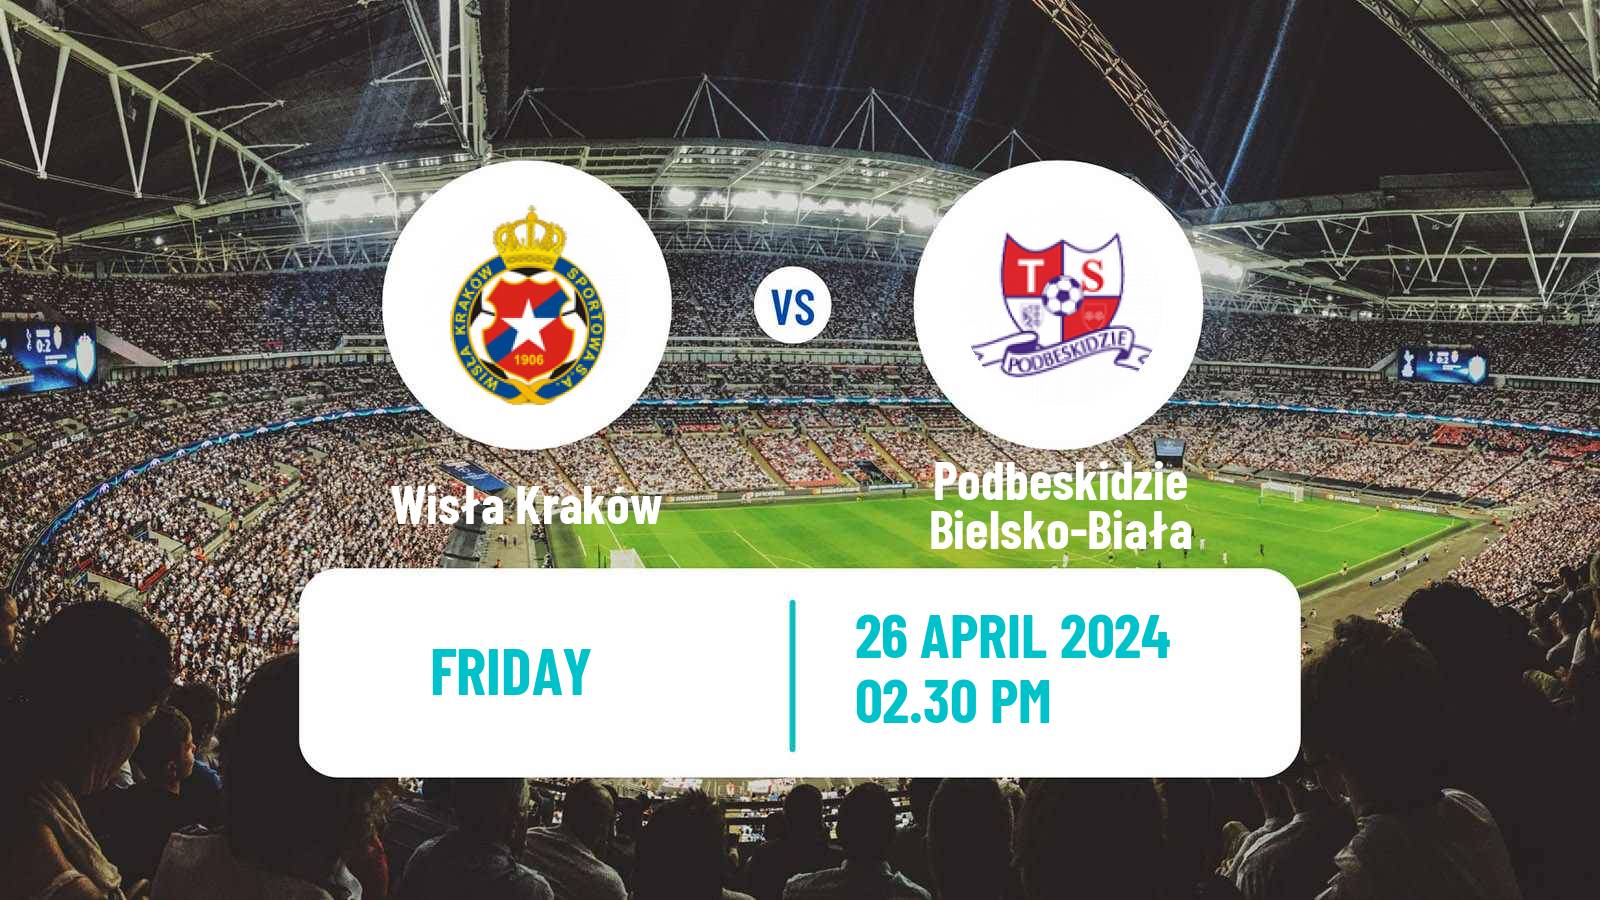 Soccer Polish Division 1 Wisła Kraków - Podbeskidzie Bielsko-Biała